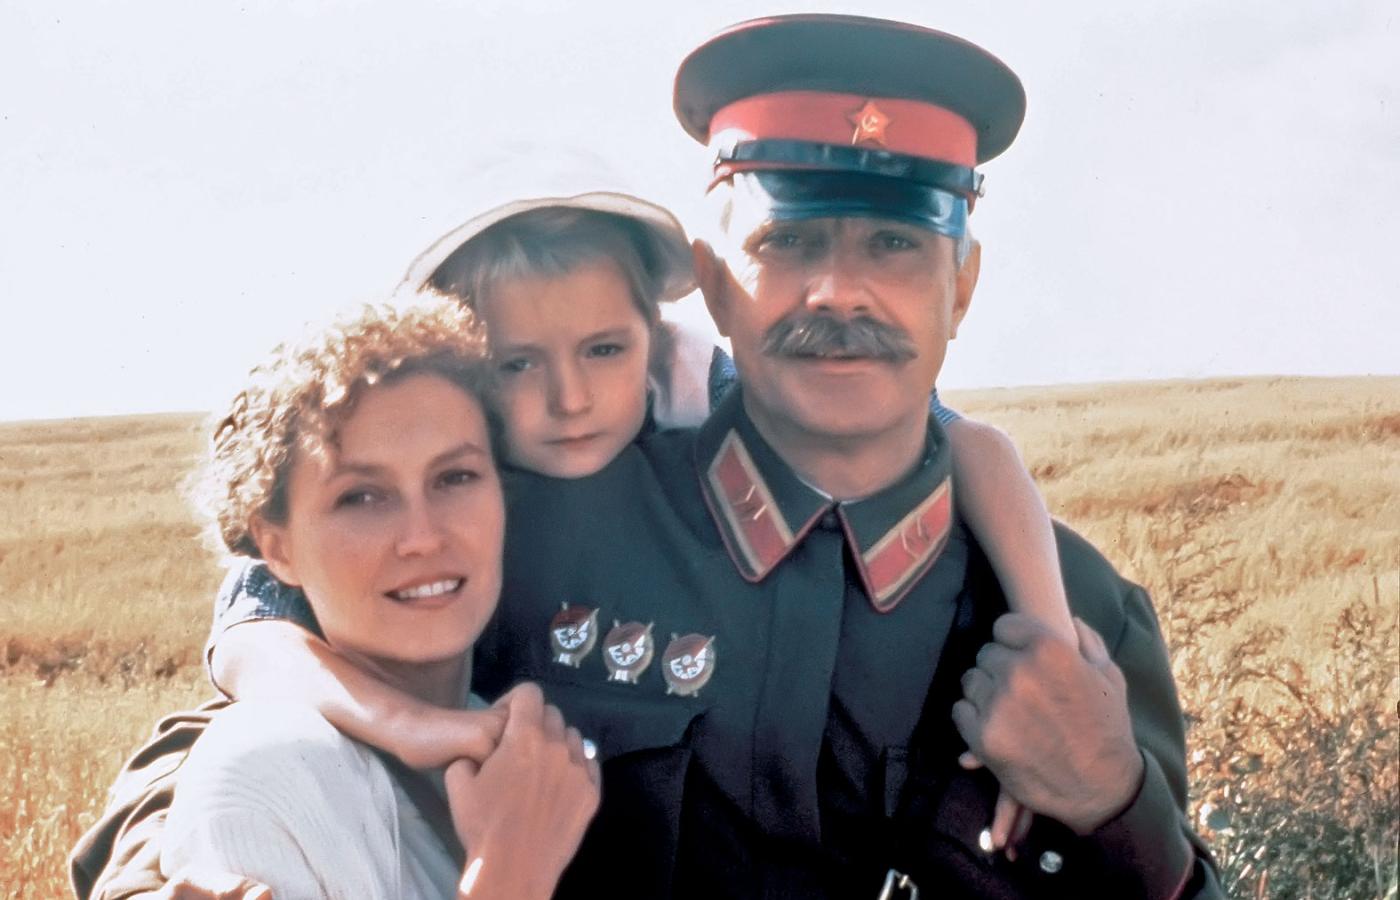 „Spaleni słońcem”, reż. Nikita Michałkow, 1994 r. – stalinowski terror w obrazie nagrodzonym Oscarem